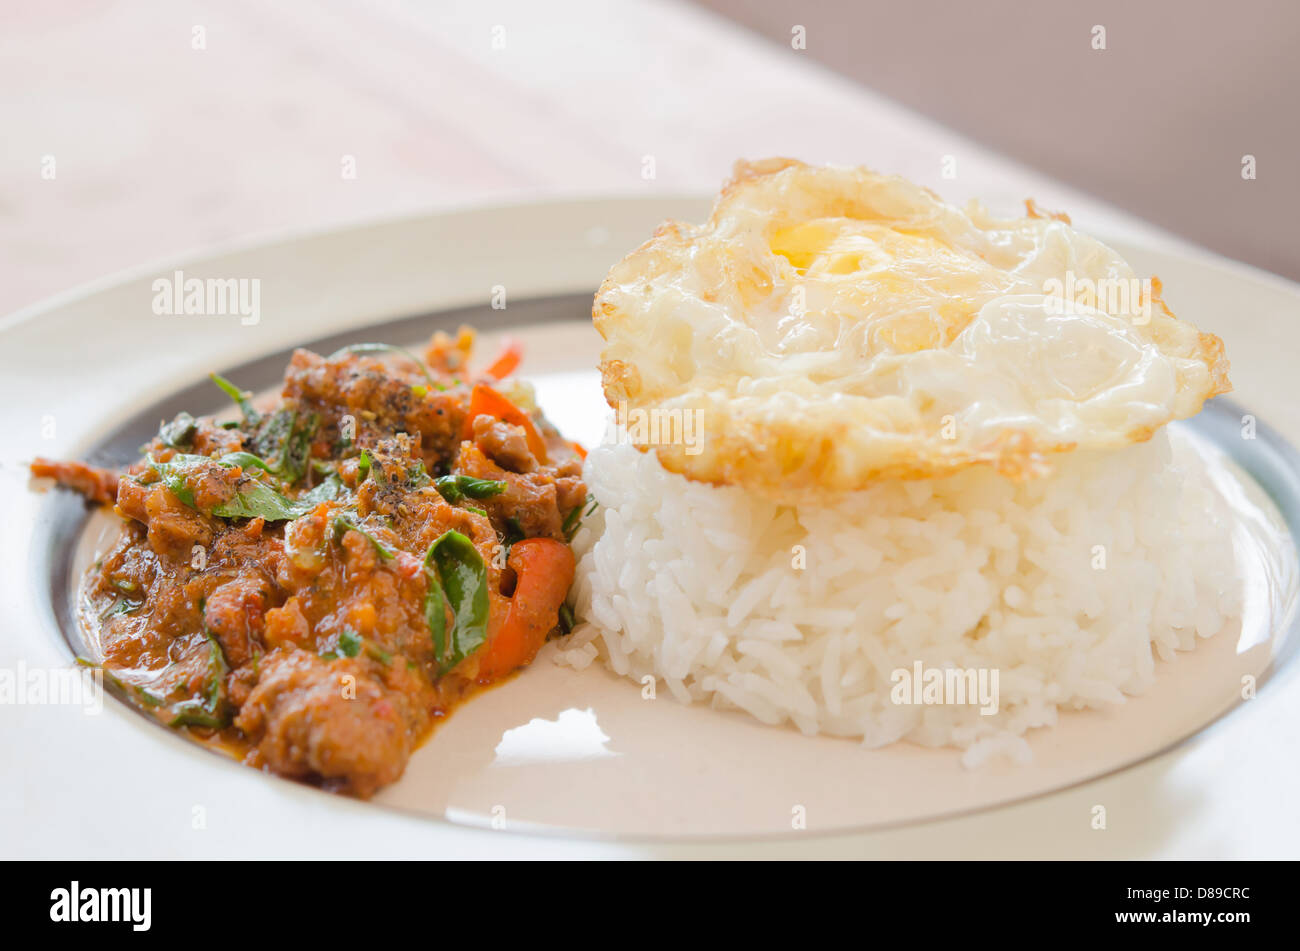 La comida asiática , huevo frito sobre arroz y carne de cerdo frita con ají y salsa de curry Foto de stock